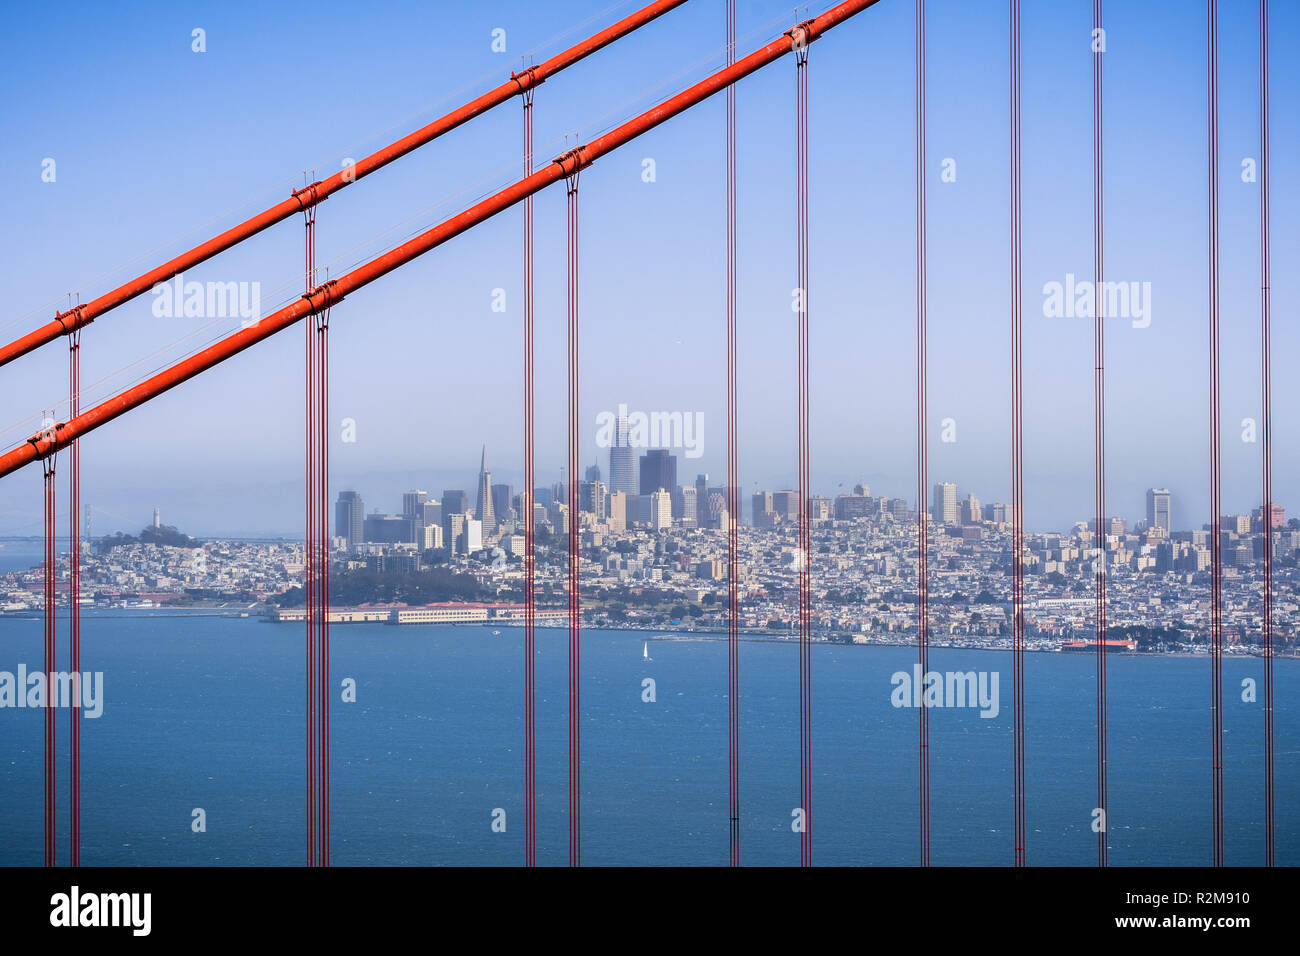 L'horizon de San Francisco vue à travers les câbles de suspension du pont Golden Gate, Californie Banque D'Images